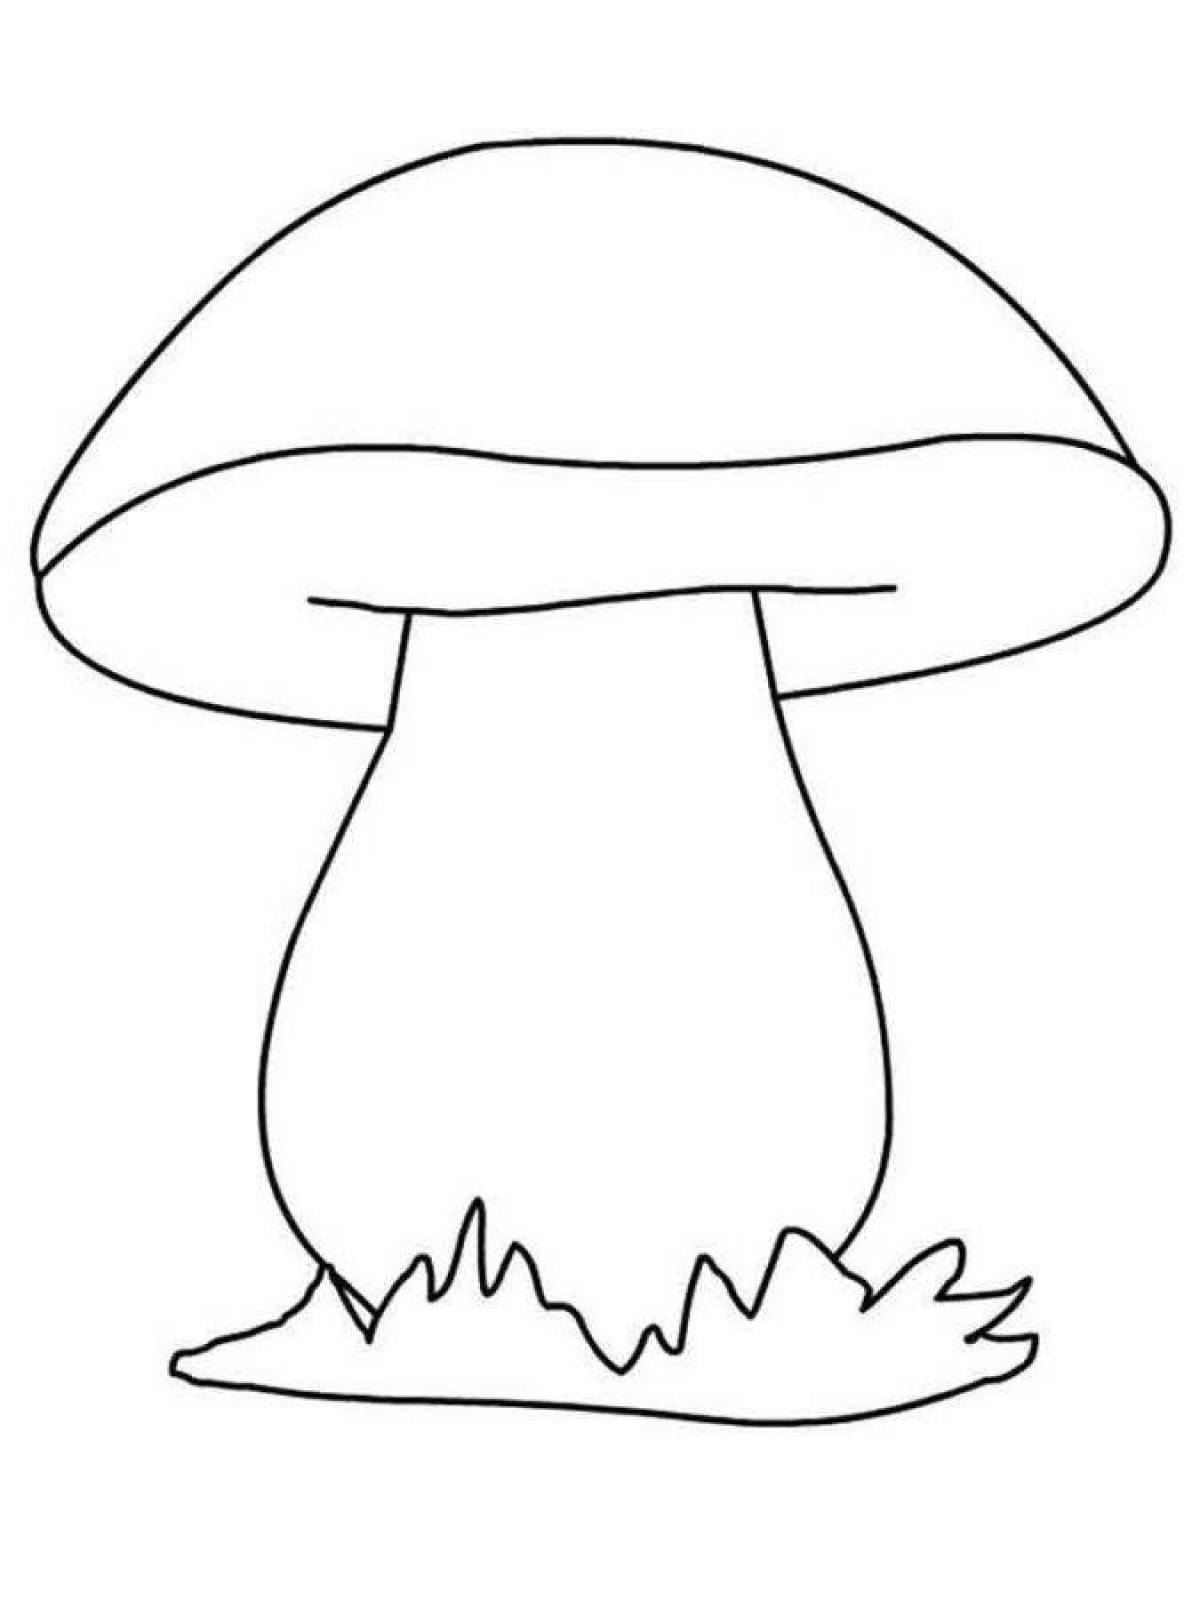 Красочная страница раскраски грибов